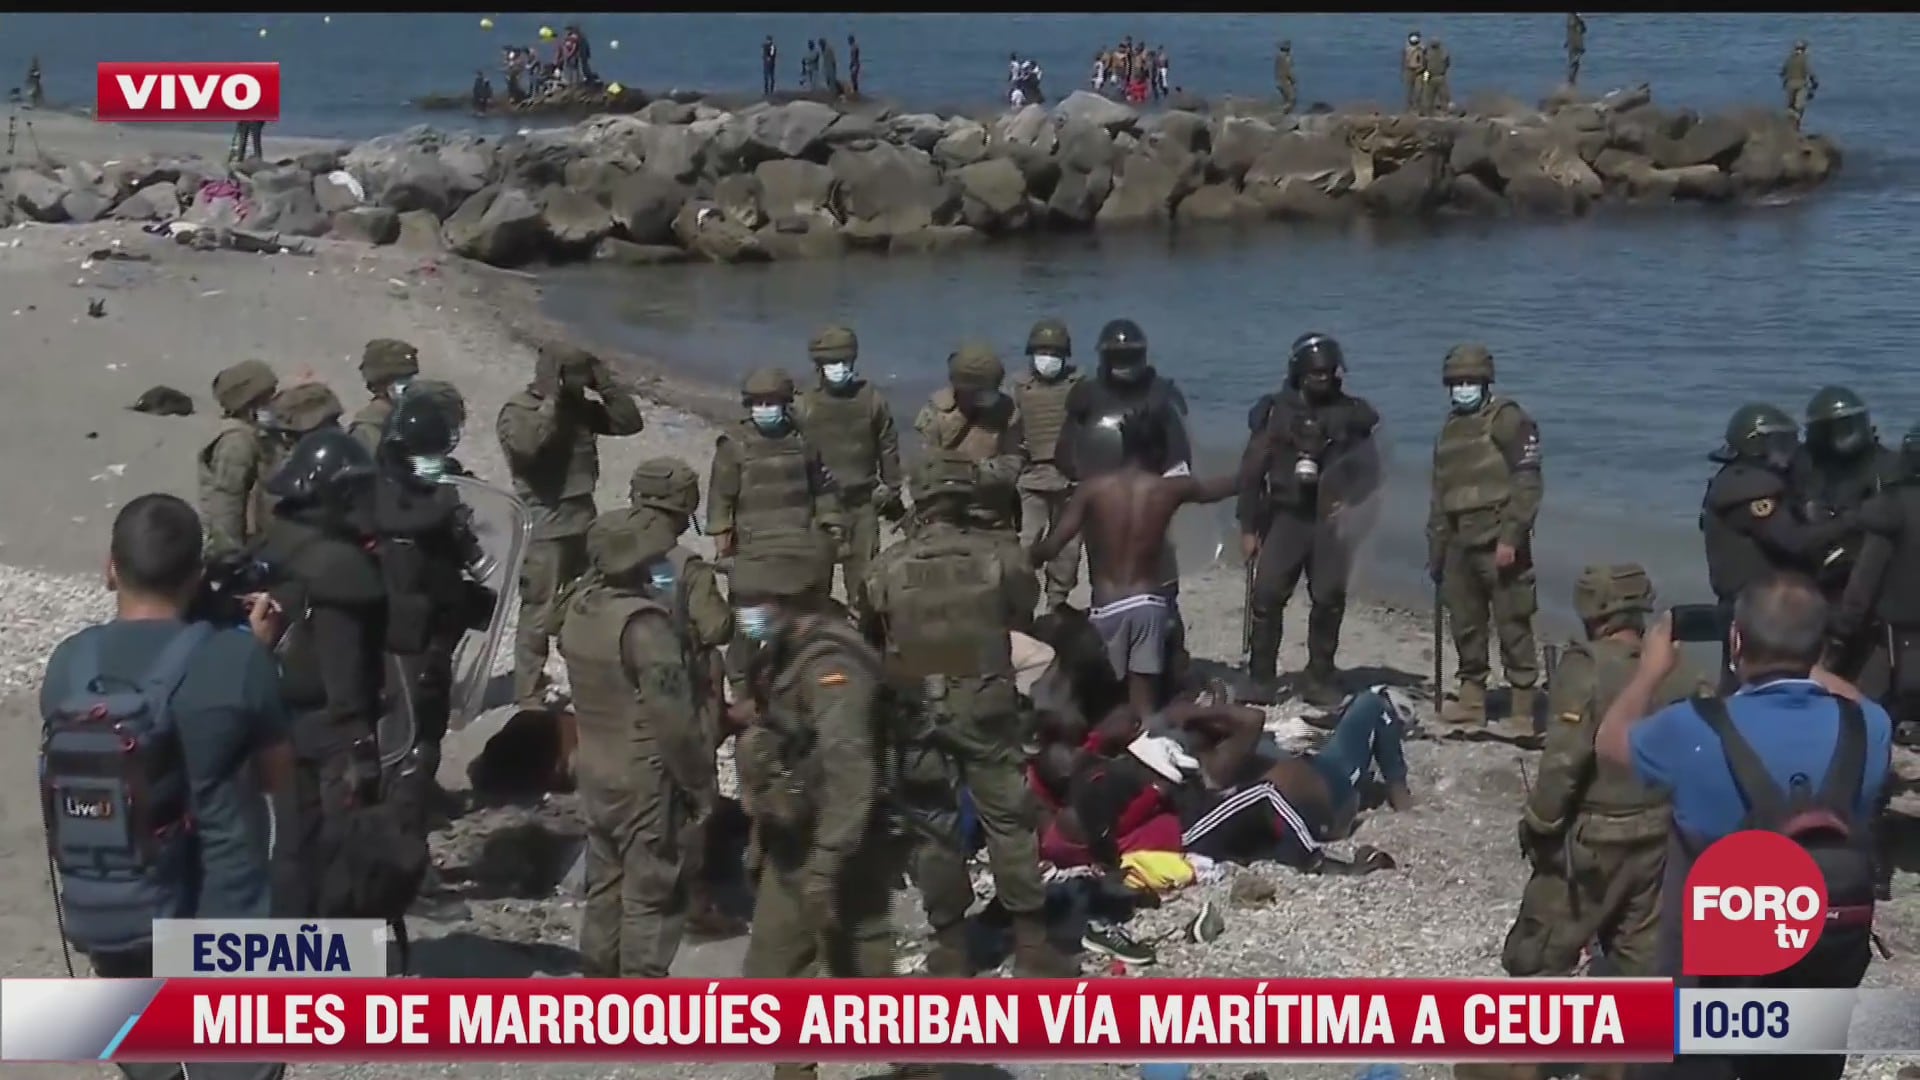 miles de migrantes marroquies llegan via maritima a ceuta